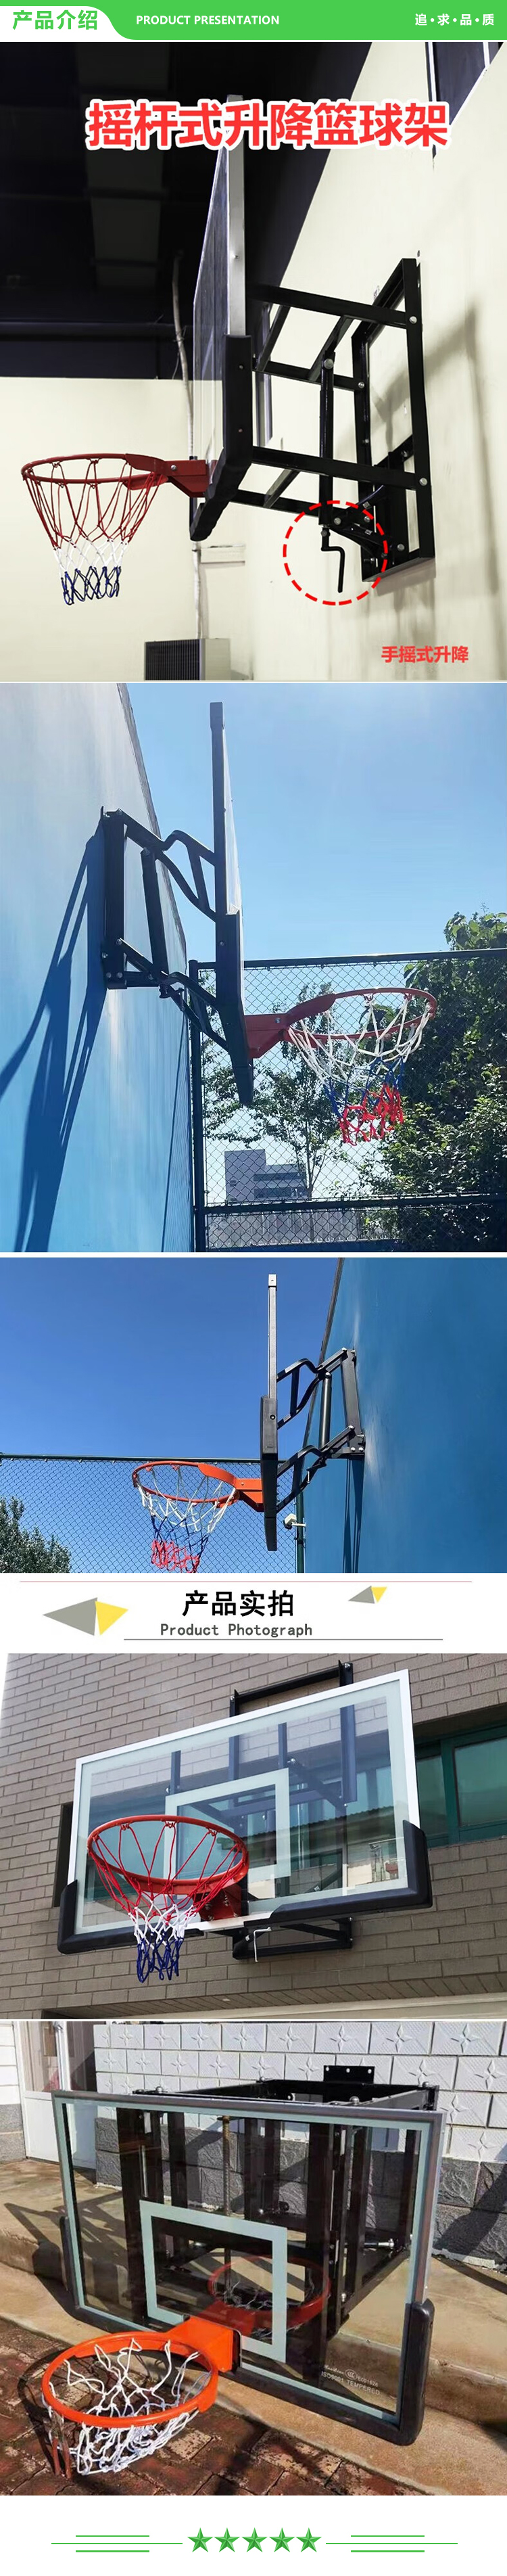 益动未来 1.8米x1.05米篮板 墙壁可升降调节篮球架 青少年学校训练室内挂壁篮球架 2.jpg